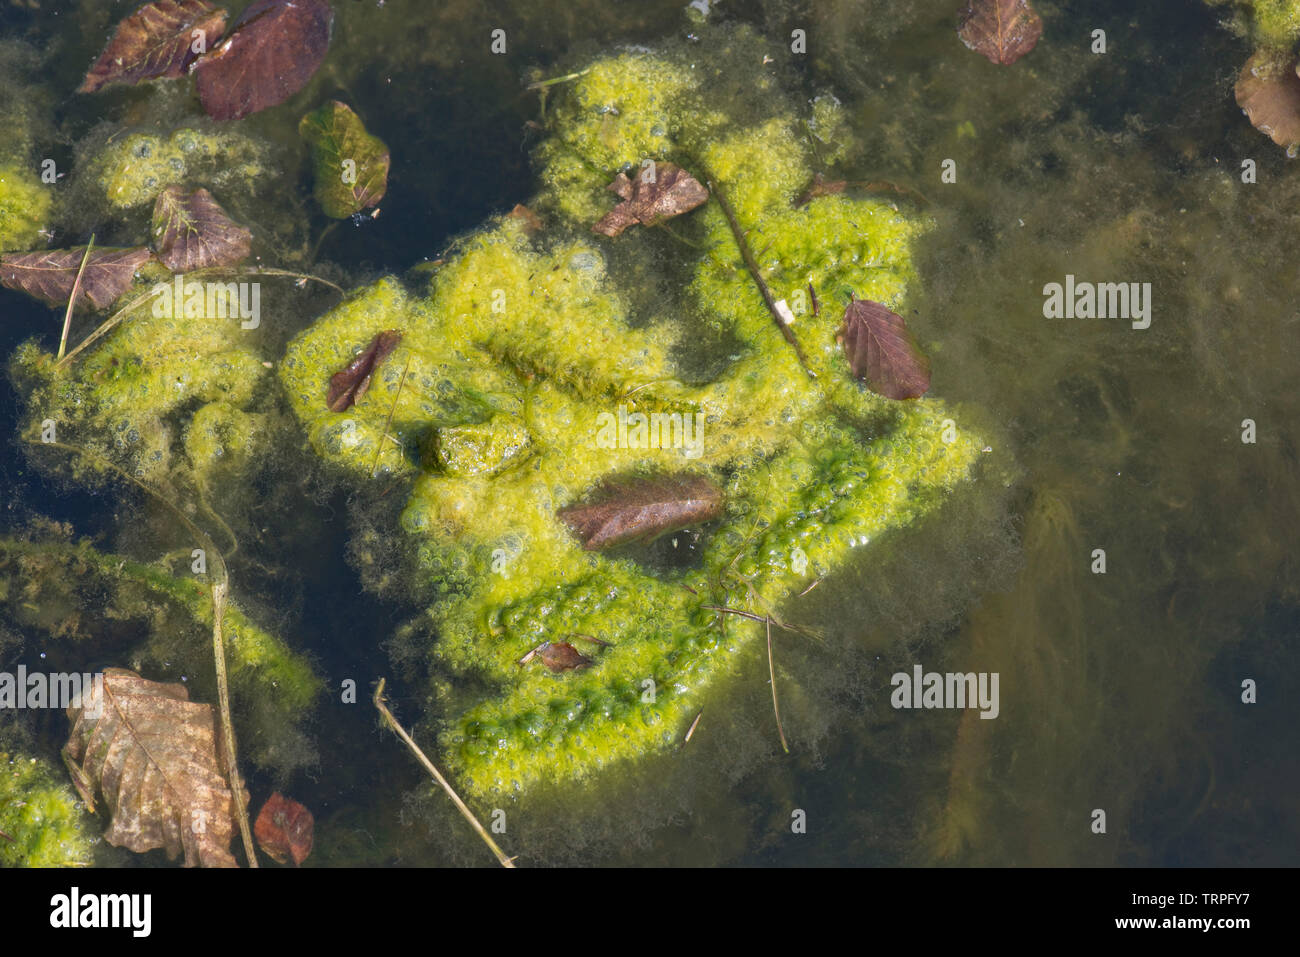 Alghe filamentose o coperta weed contaminare un laghetto in giardino, di crescita ad alta densità intorno a piante acquatiche in primavera Foto Stock